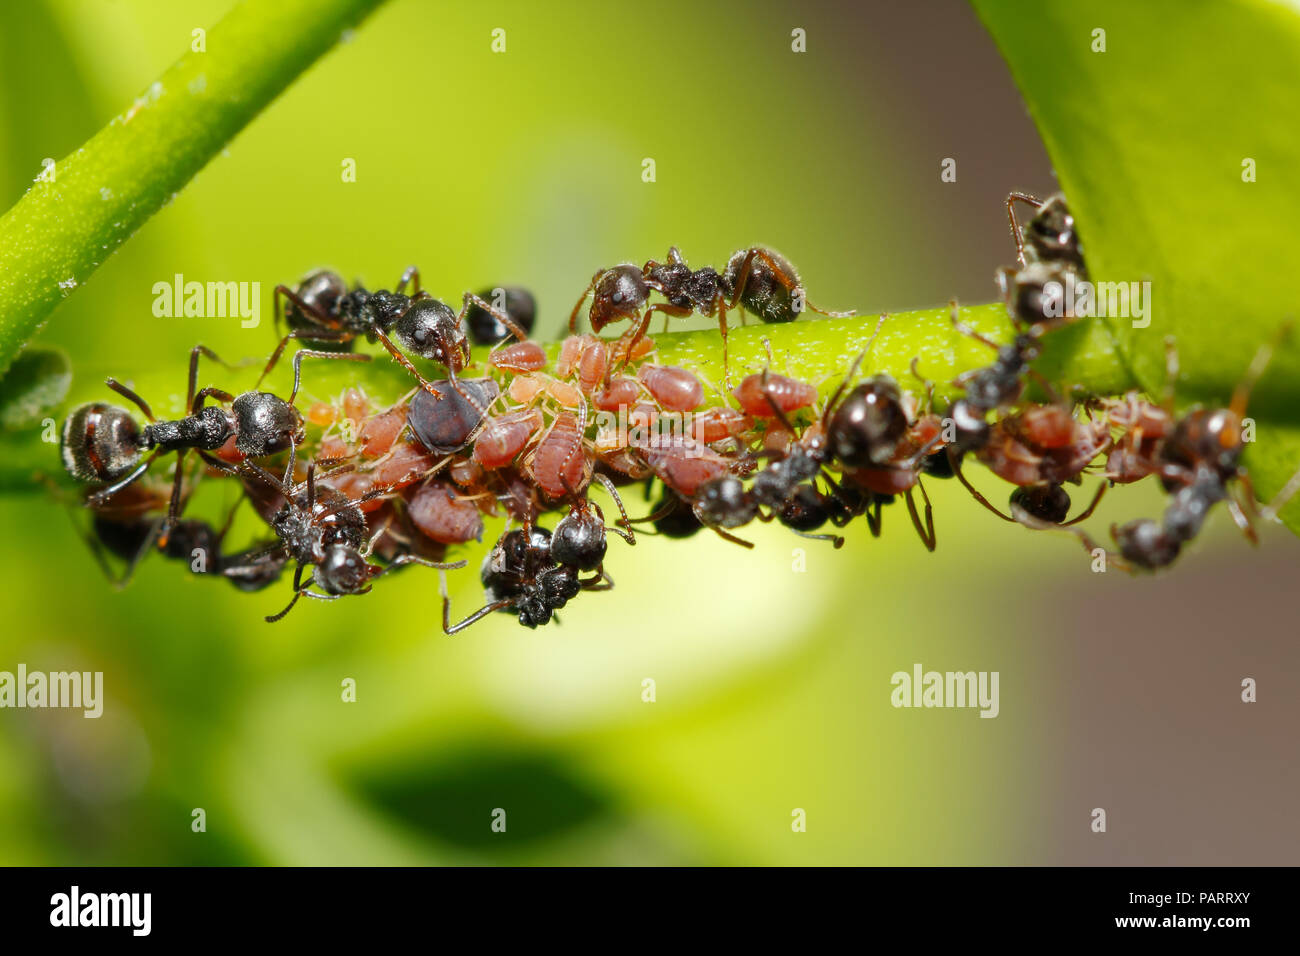 Hormiga negra (Dolichoderus thoracicus) la cría de pulgones (aphis sp.) de honeydew Foto de stock